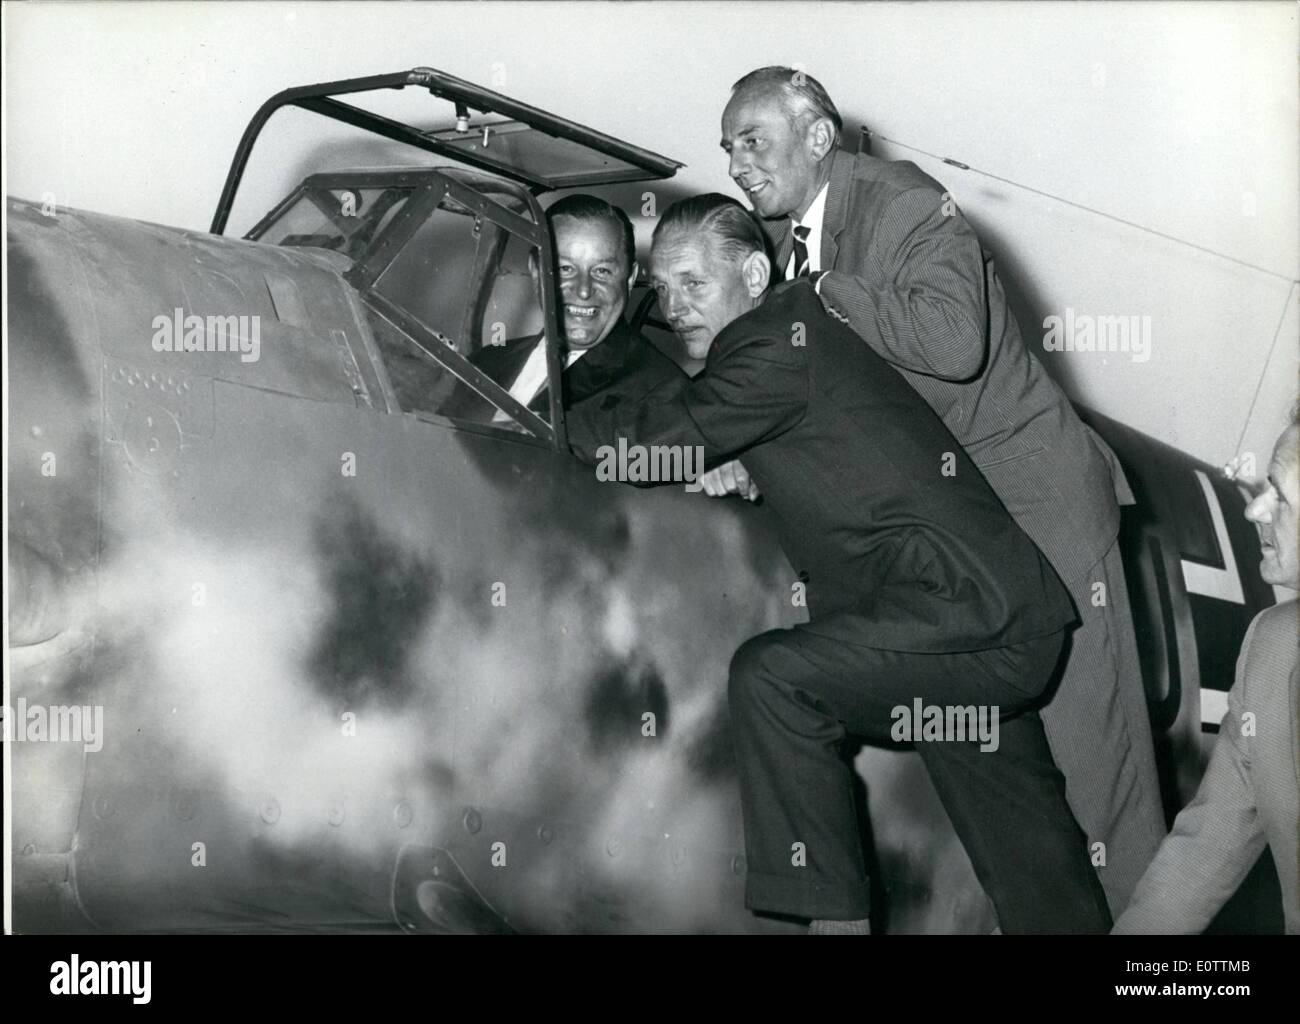 Septembre 09, 1960 - une vieille connaissance...a rencontré ces trois pilotes Le vendredi, Septembre 2nd, 1960 dans le Musée Allemand de Munich : Un ''Me 109'' qui a été donné comme un cadeau de l'Armée de l'espagnol au Ministère le Musée Allemand de Minuch par son constructeur, le Professeur Dr.-Ing. E.H. Willy Messerschmitt (MESSERSCHMITT). En même temps le 25ème anniversaire, de la plus célèbre avion de chasse allemand de la Seconde Guerre mondiale a été célébrée Banque D'Images